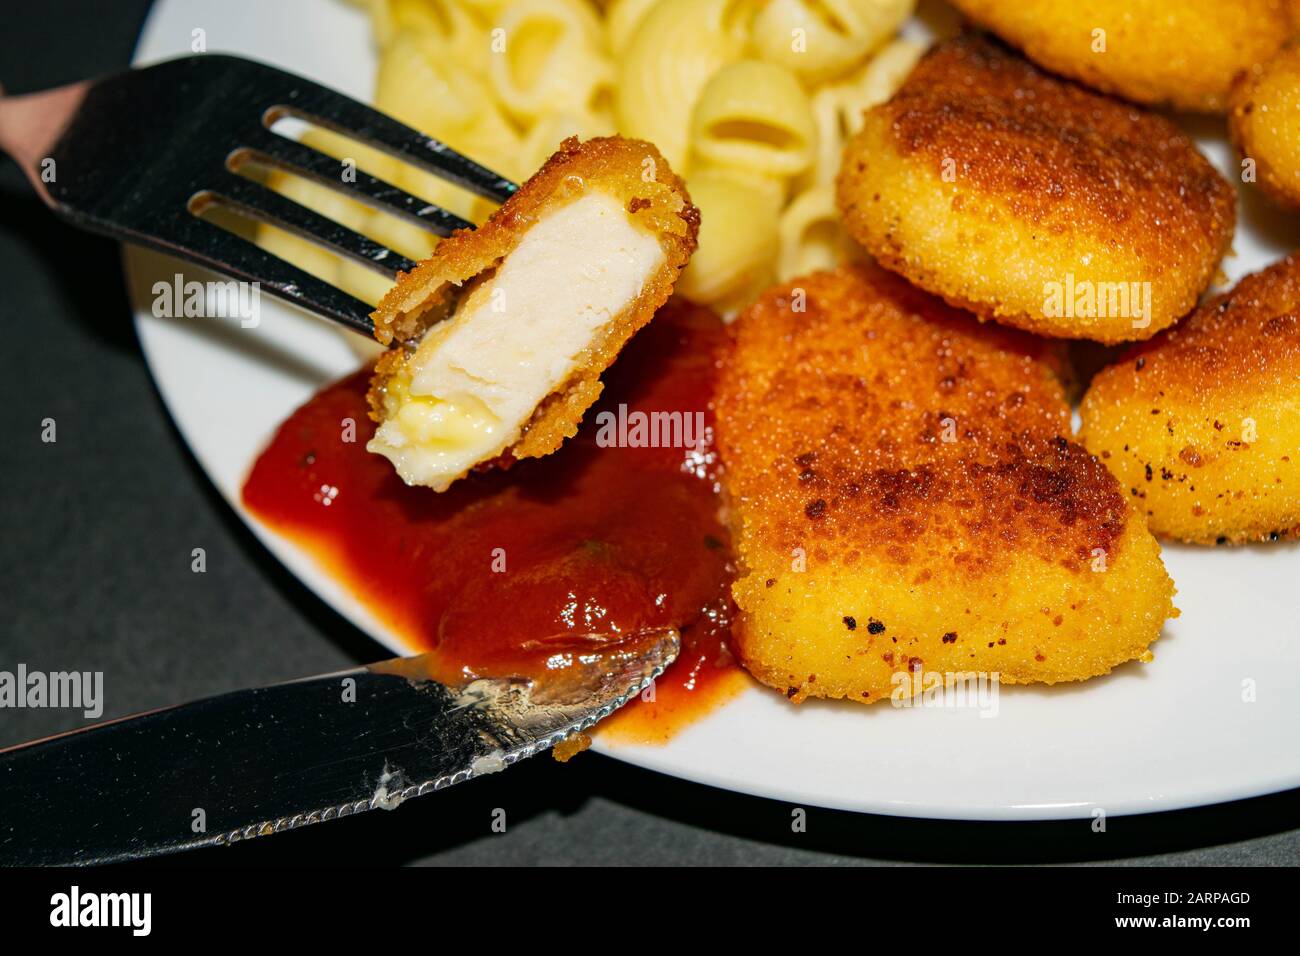 Un morceau de pépites sur une fourchette et une plaque blanche avec des pépites de poulet frit, des pâtes et du ketchup sur un fond sombre. Gros plan Banque D'Images